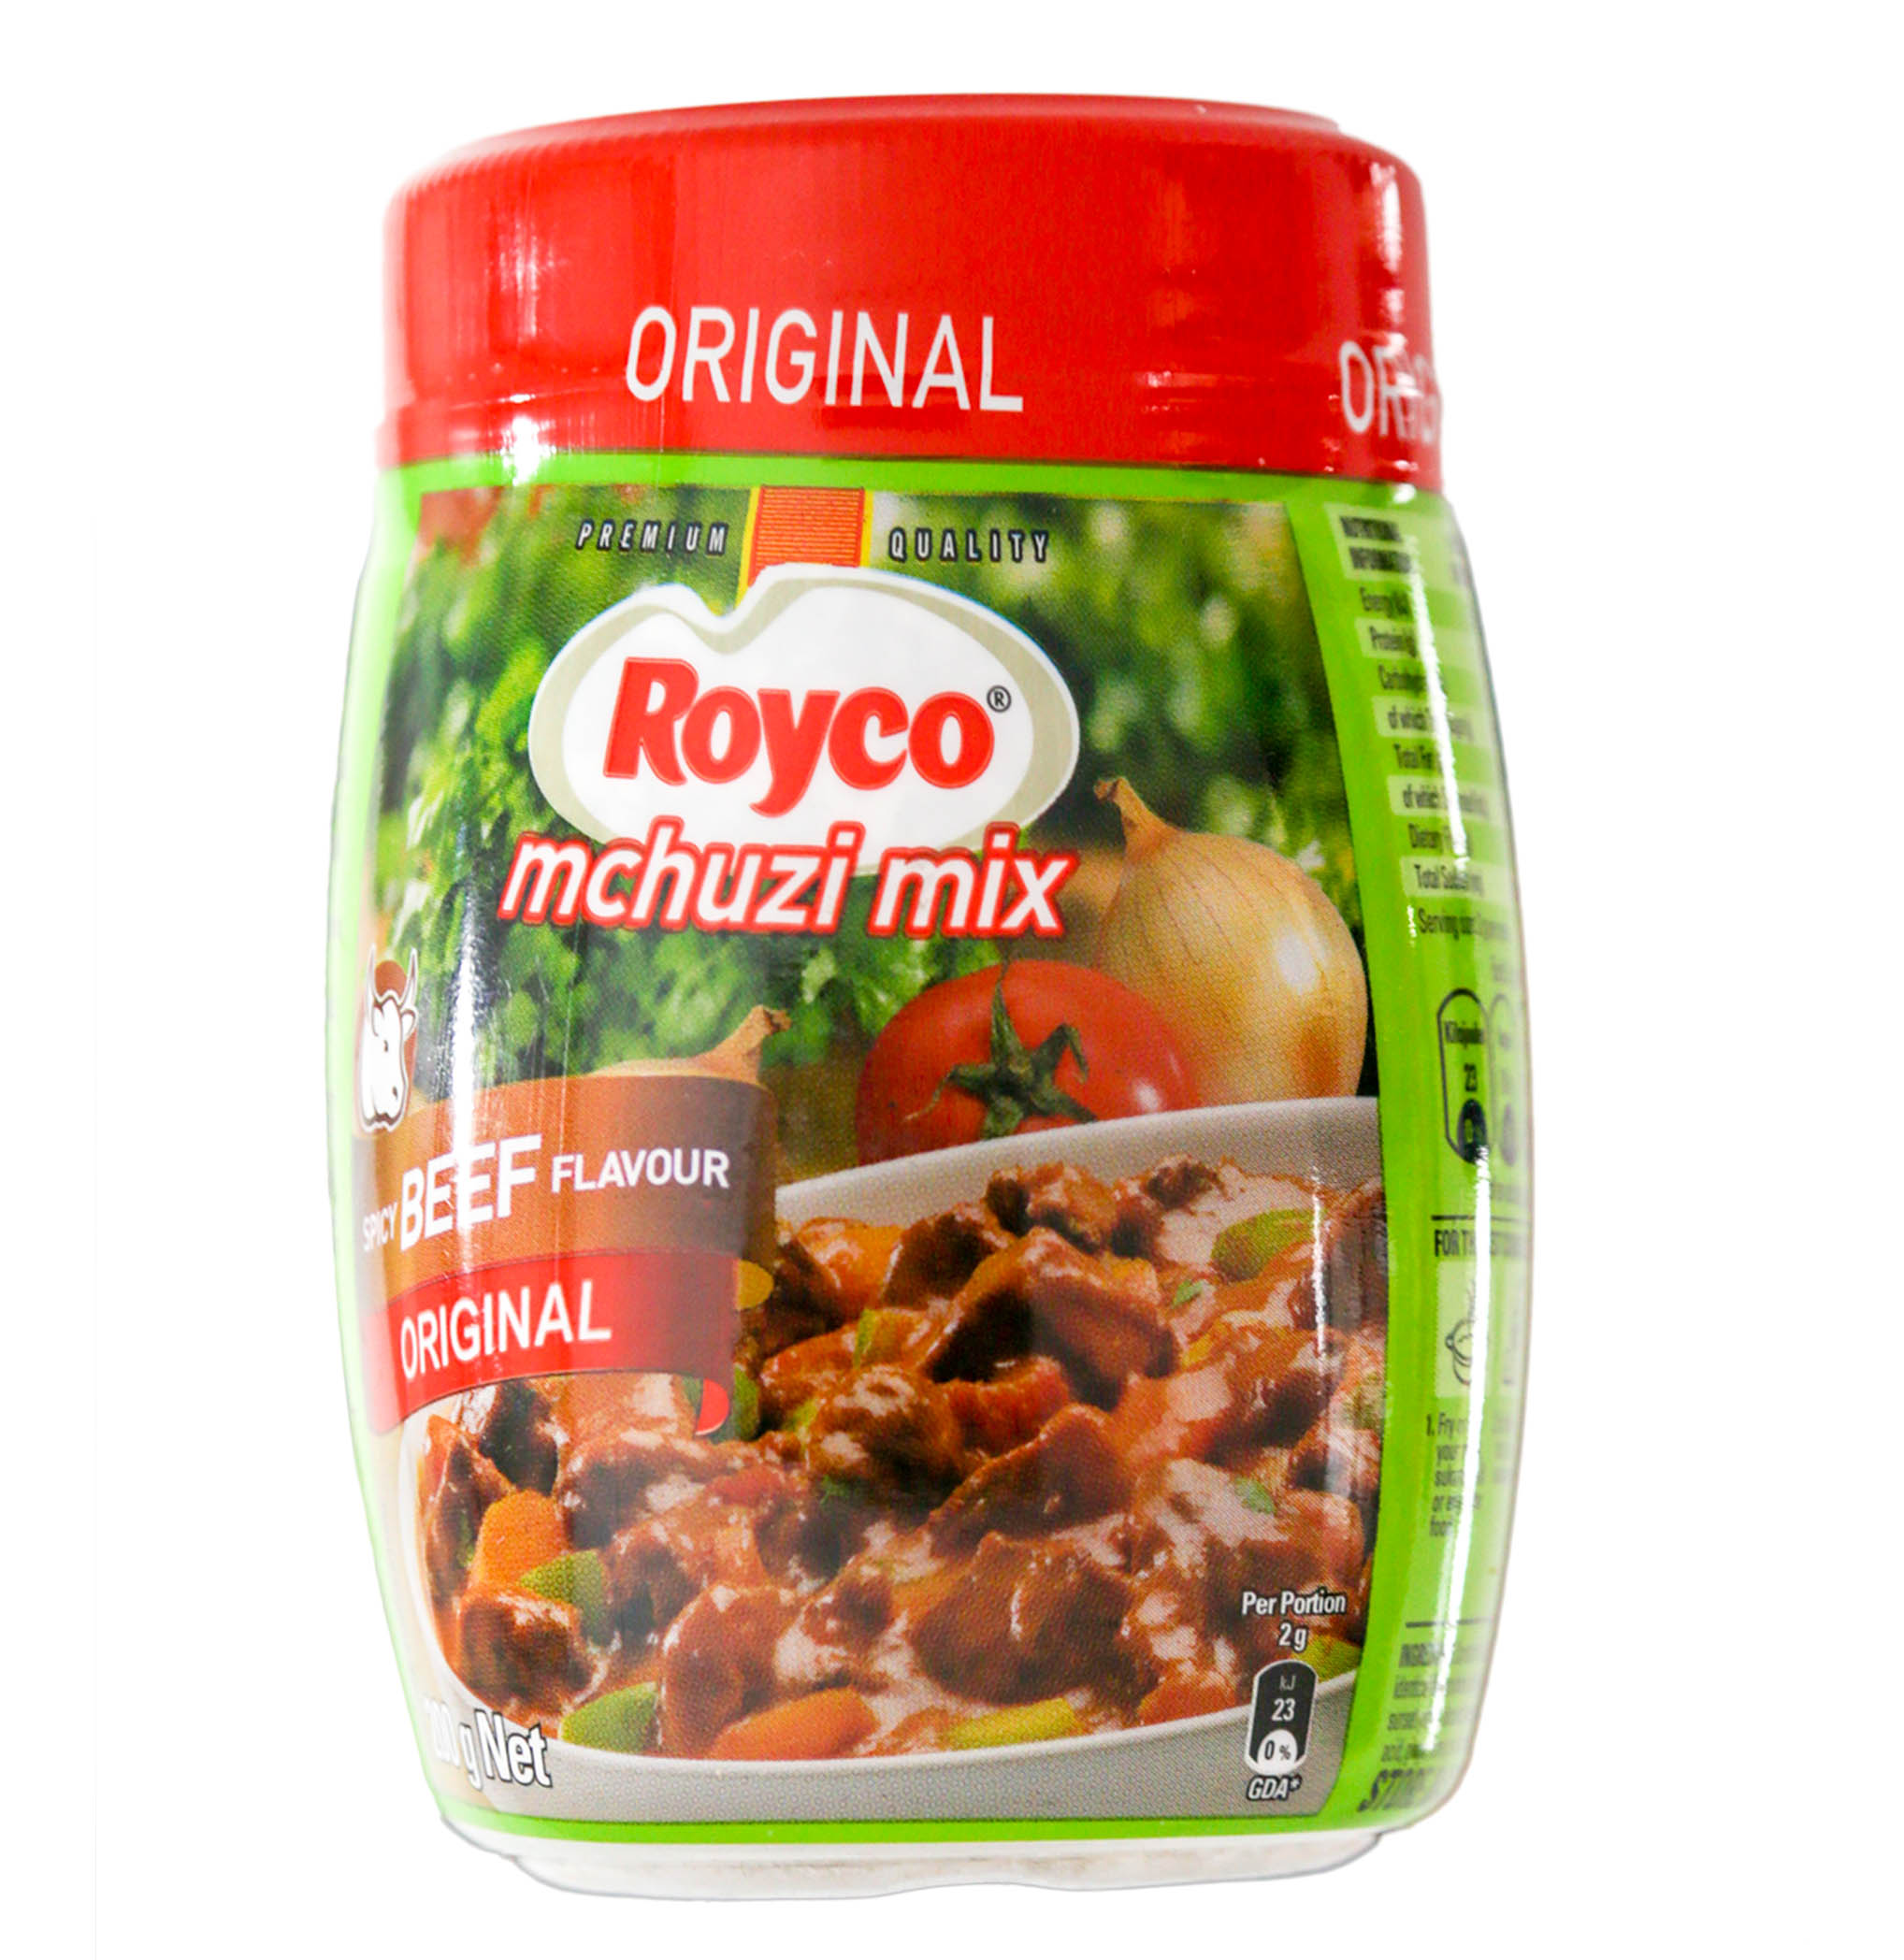 Royco Mchuzi Mix Spicy Beed Flavour